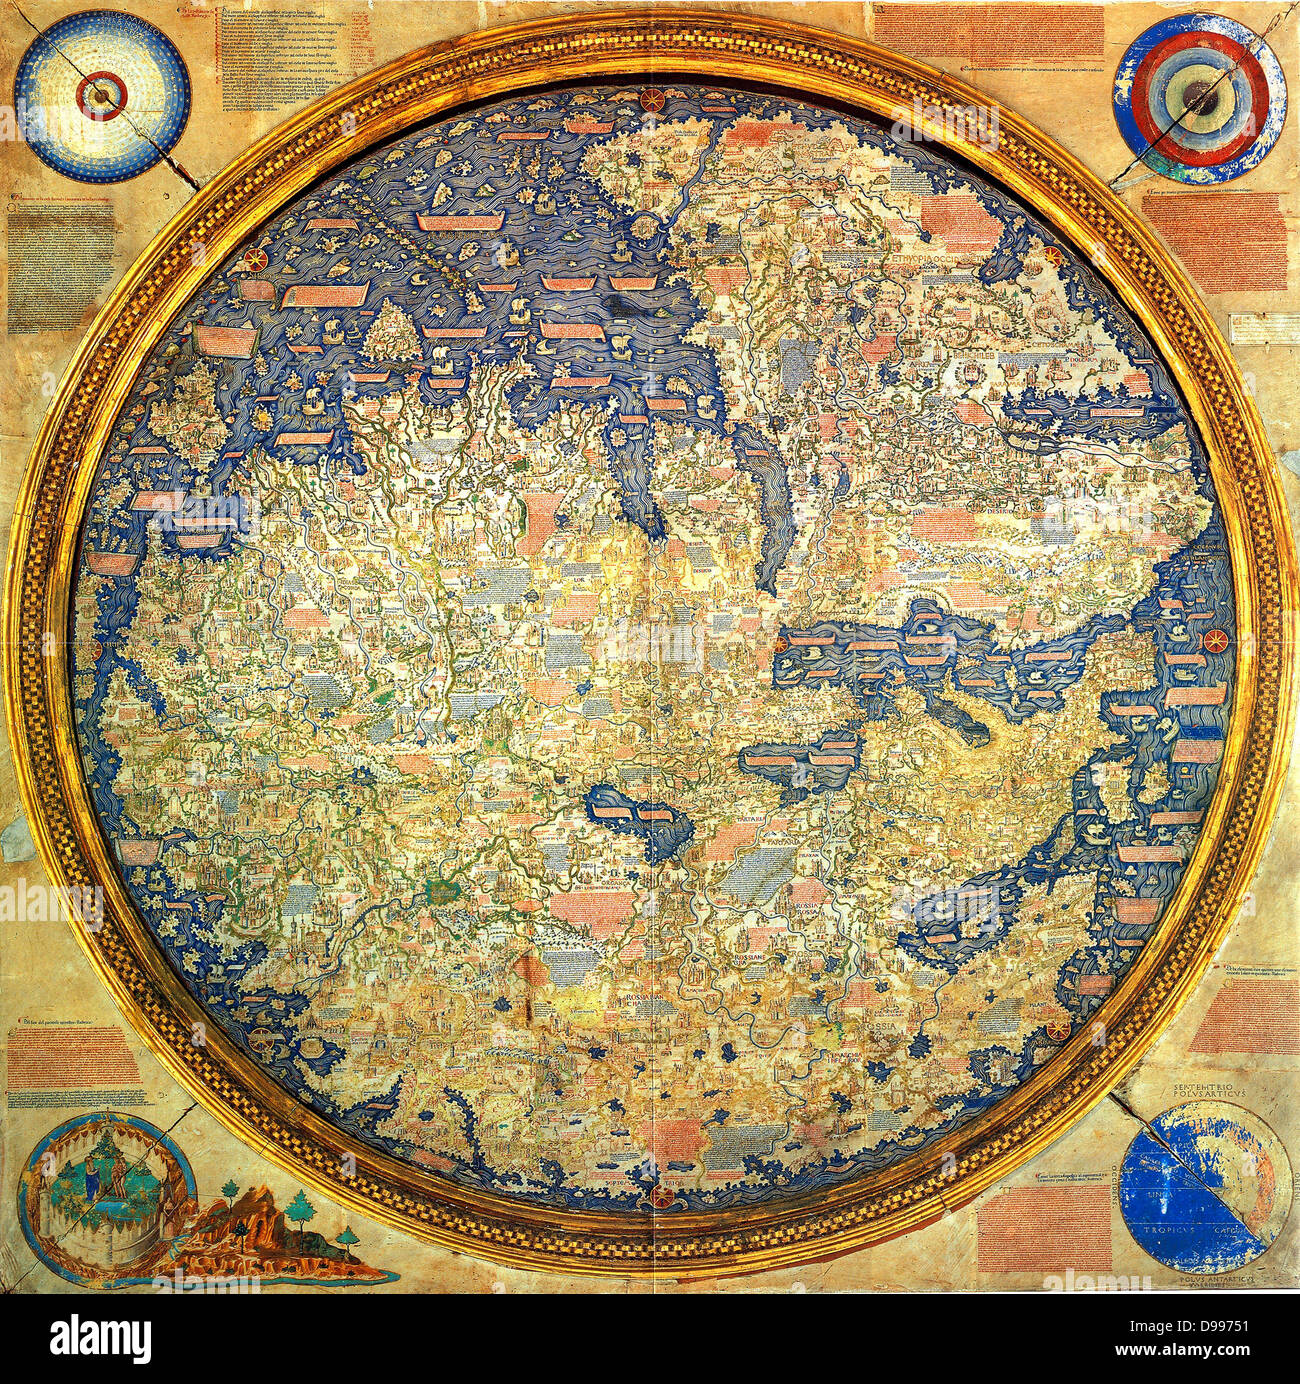 Mapa de Fra Mauro (1460). El mapa de Fra Mauro (orientación Sur en la parte superior).es considerado el mayor memorial de cartografía medieval. por el monje veneciano Fra Mauro. Es un planisferio circular dibujado en pergamino y en un marco de madera, de unos dos metros de diámetro Foto de stock